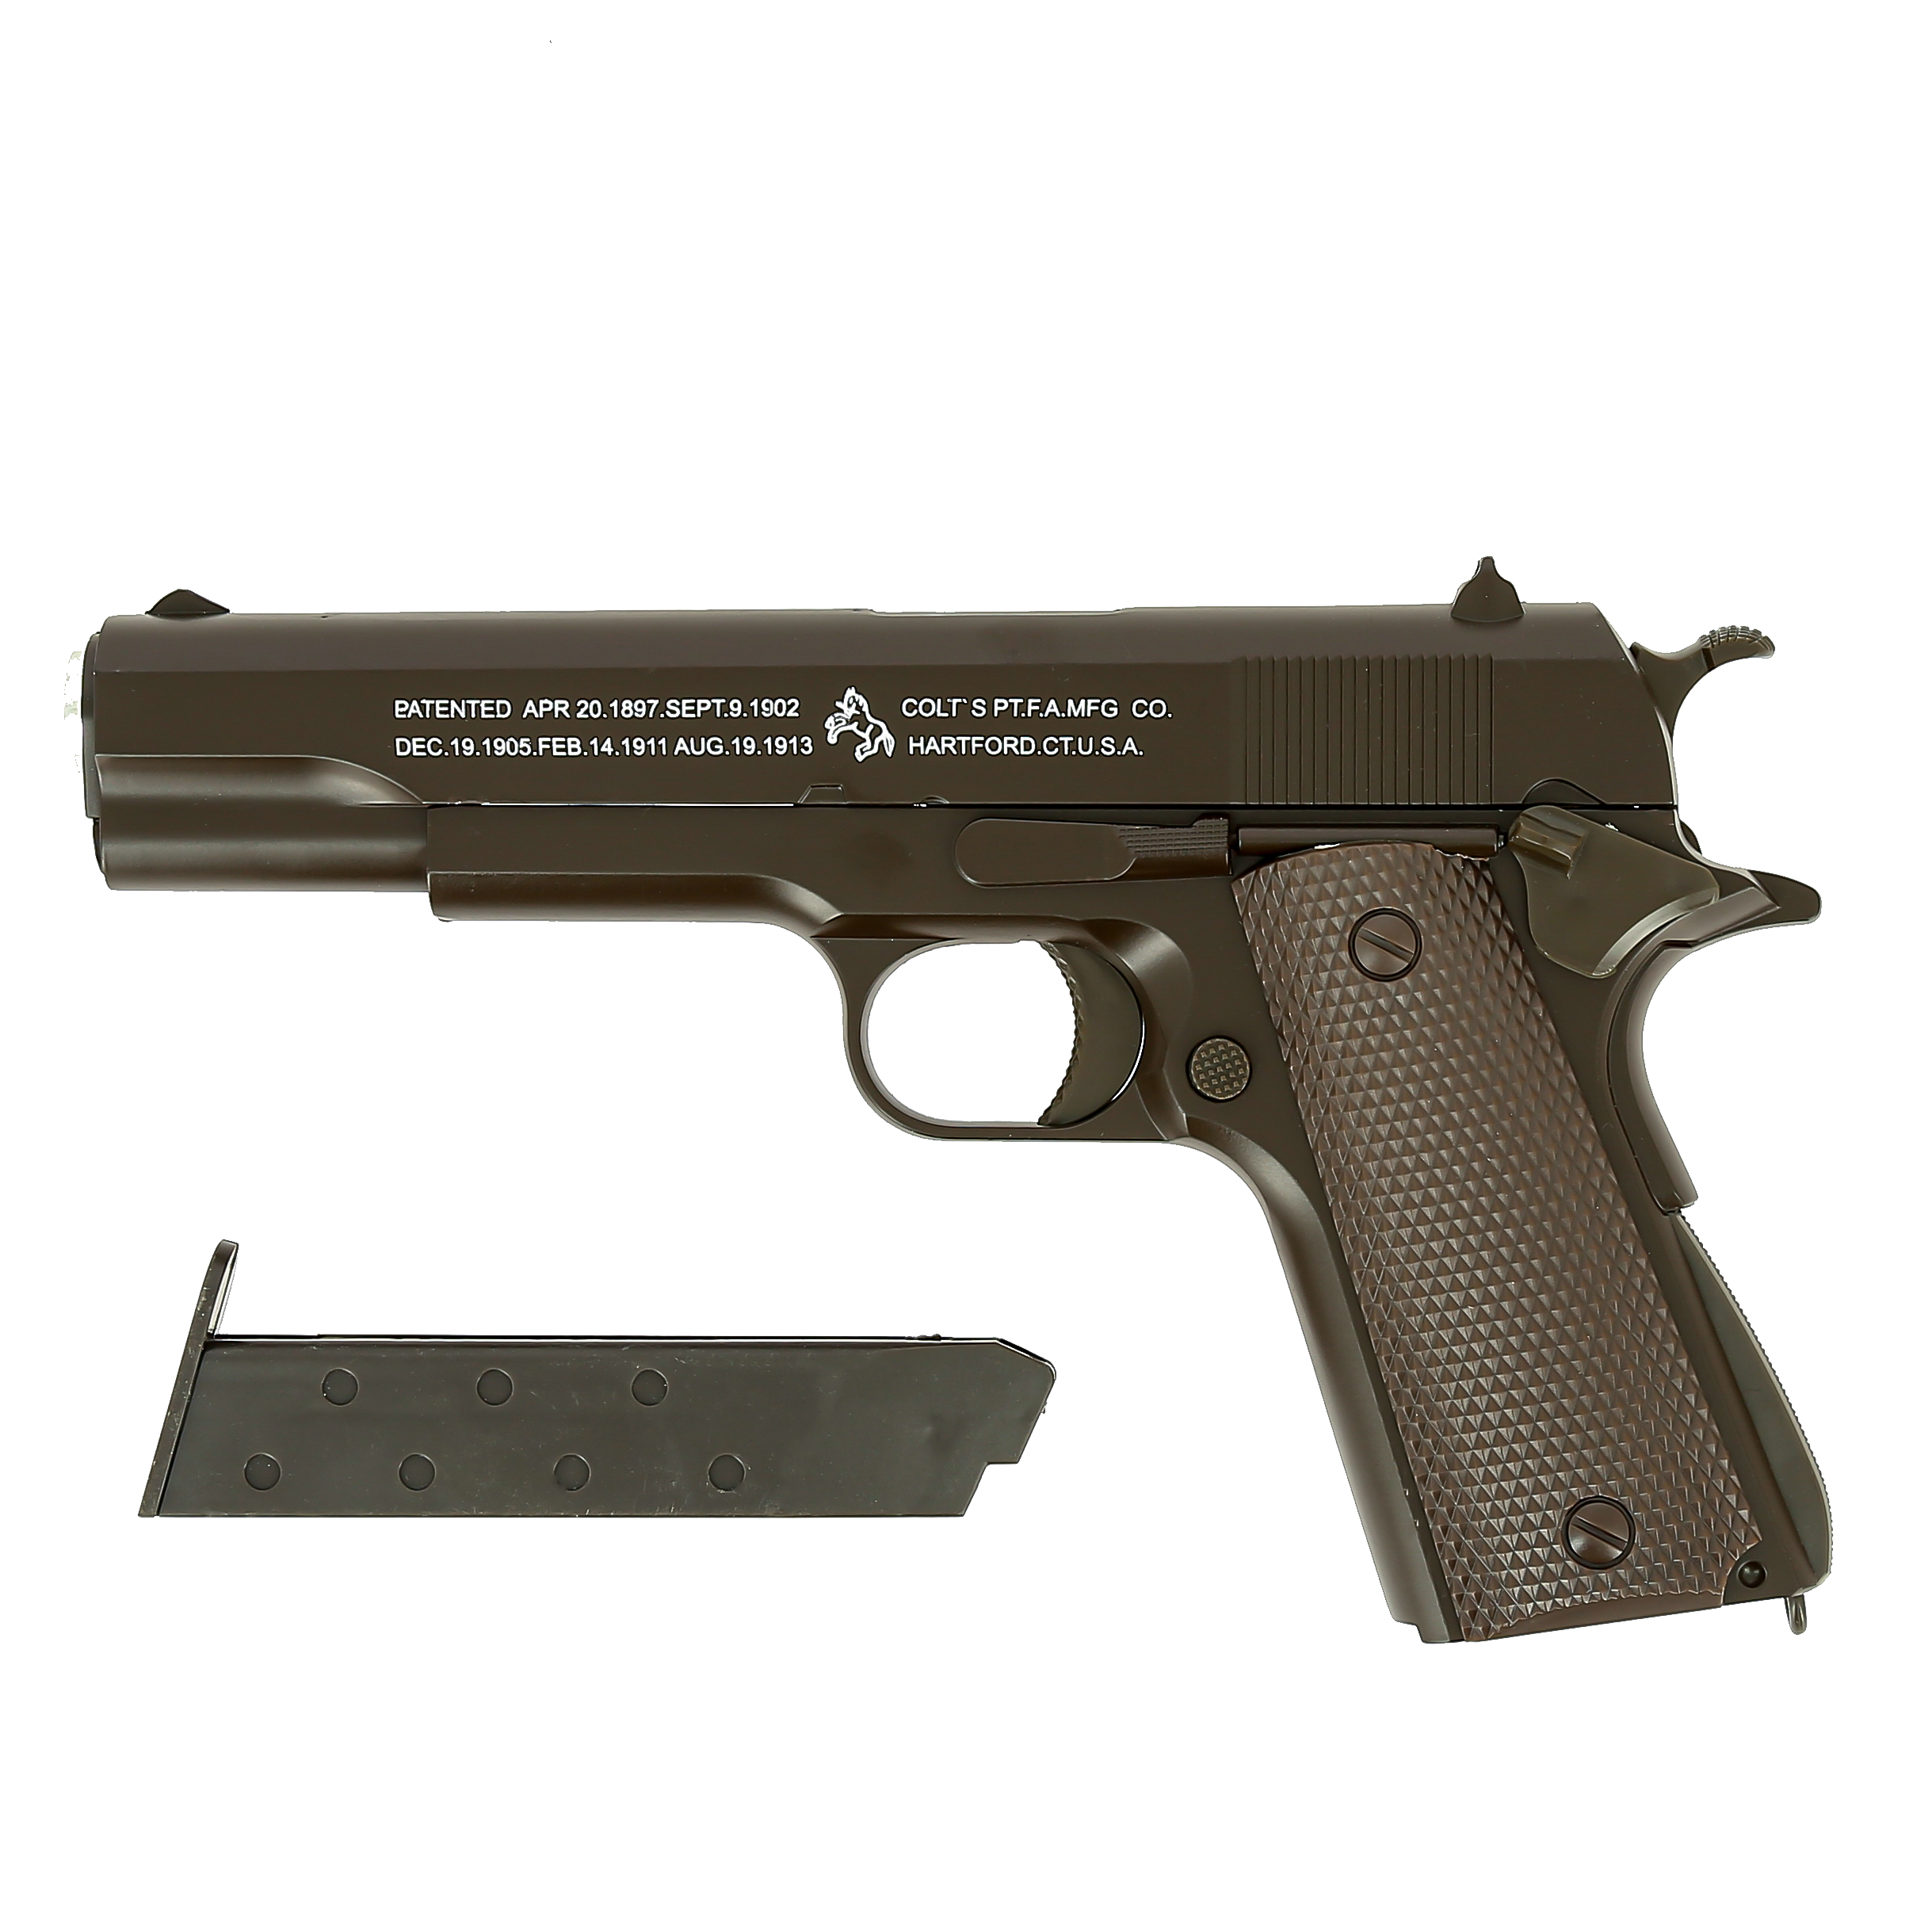    Colt S P.T.F.A.MFG CO. HARTFORD.CT.U.S.A.,  20 . # 3 hobbyplus.ru